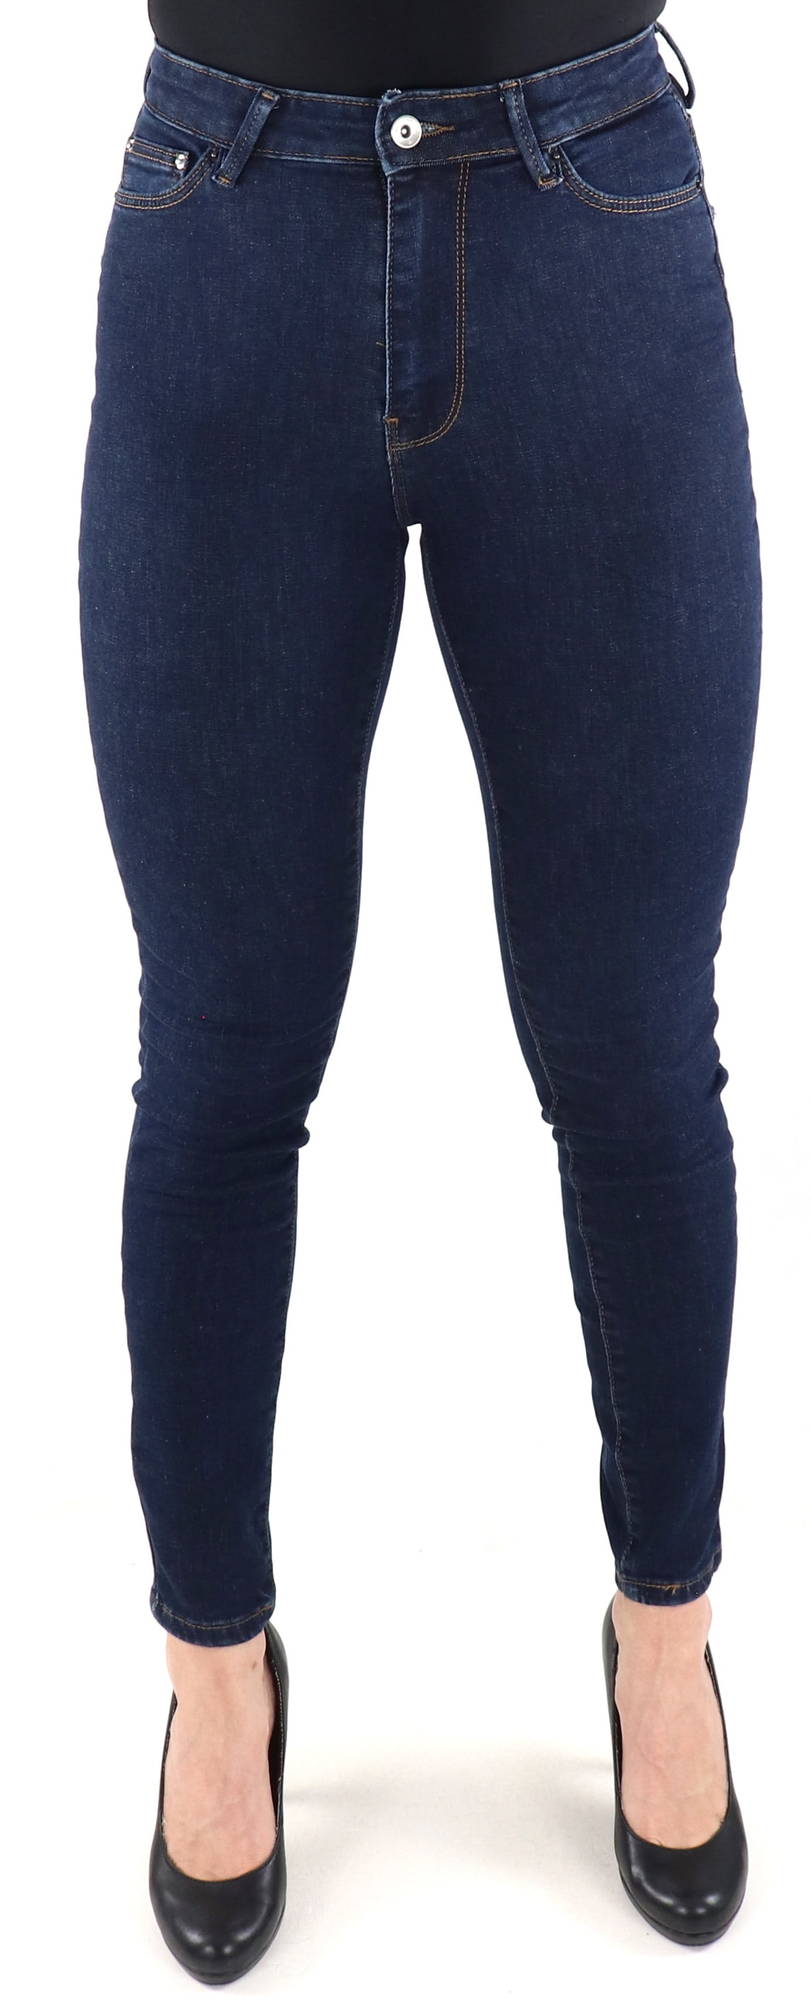 Only Jeans Iconic hw sk long dark blue - Stilettoshop.eu webstore